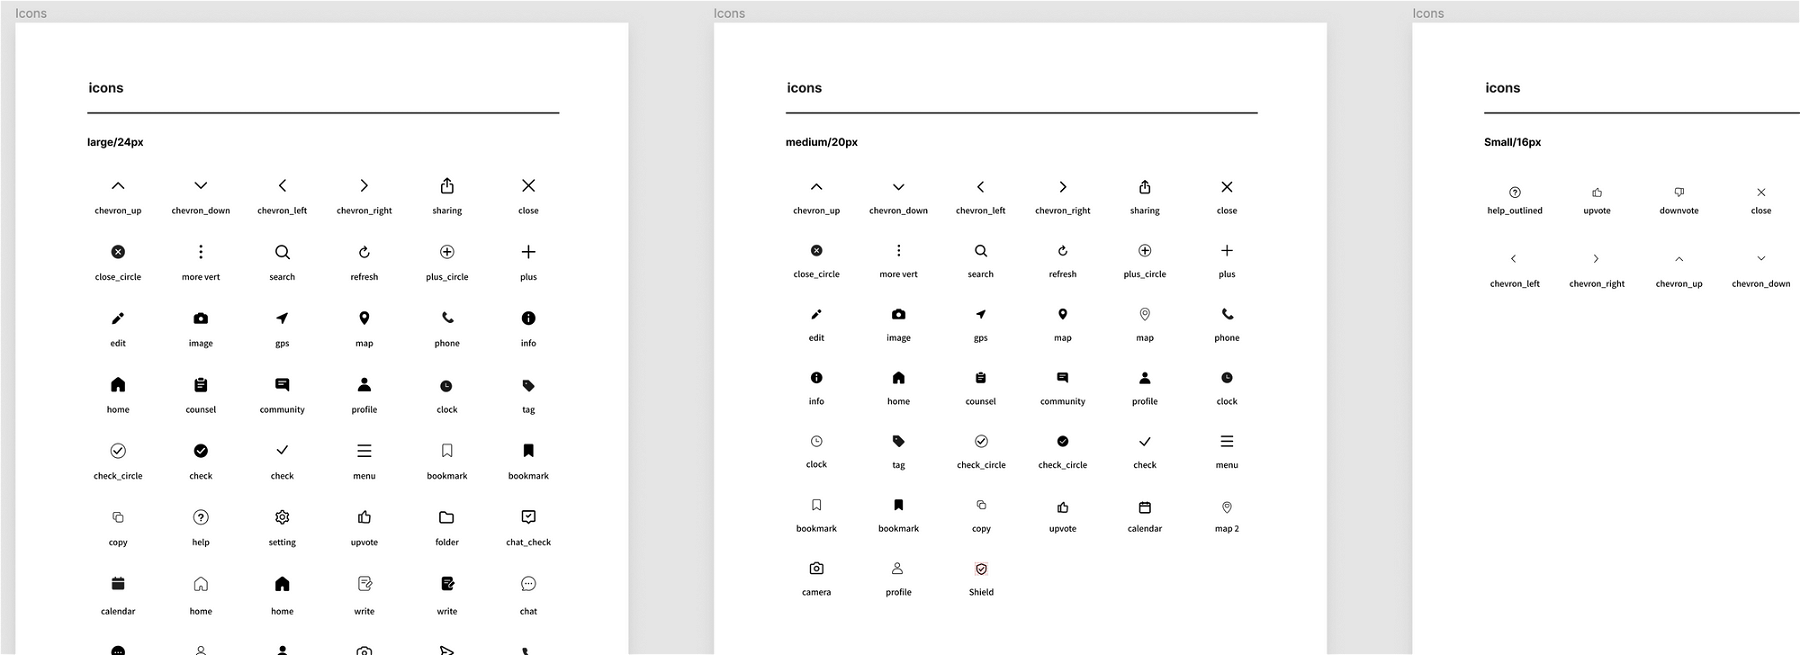 디자인 조직 - 피그마에서는 Icon을 사이즈별로 분류하여 작성, 관리